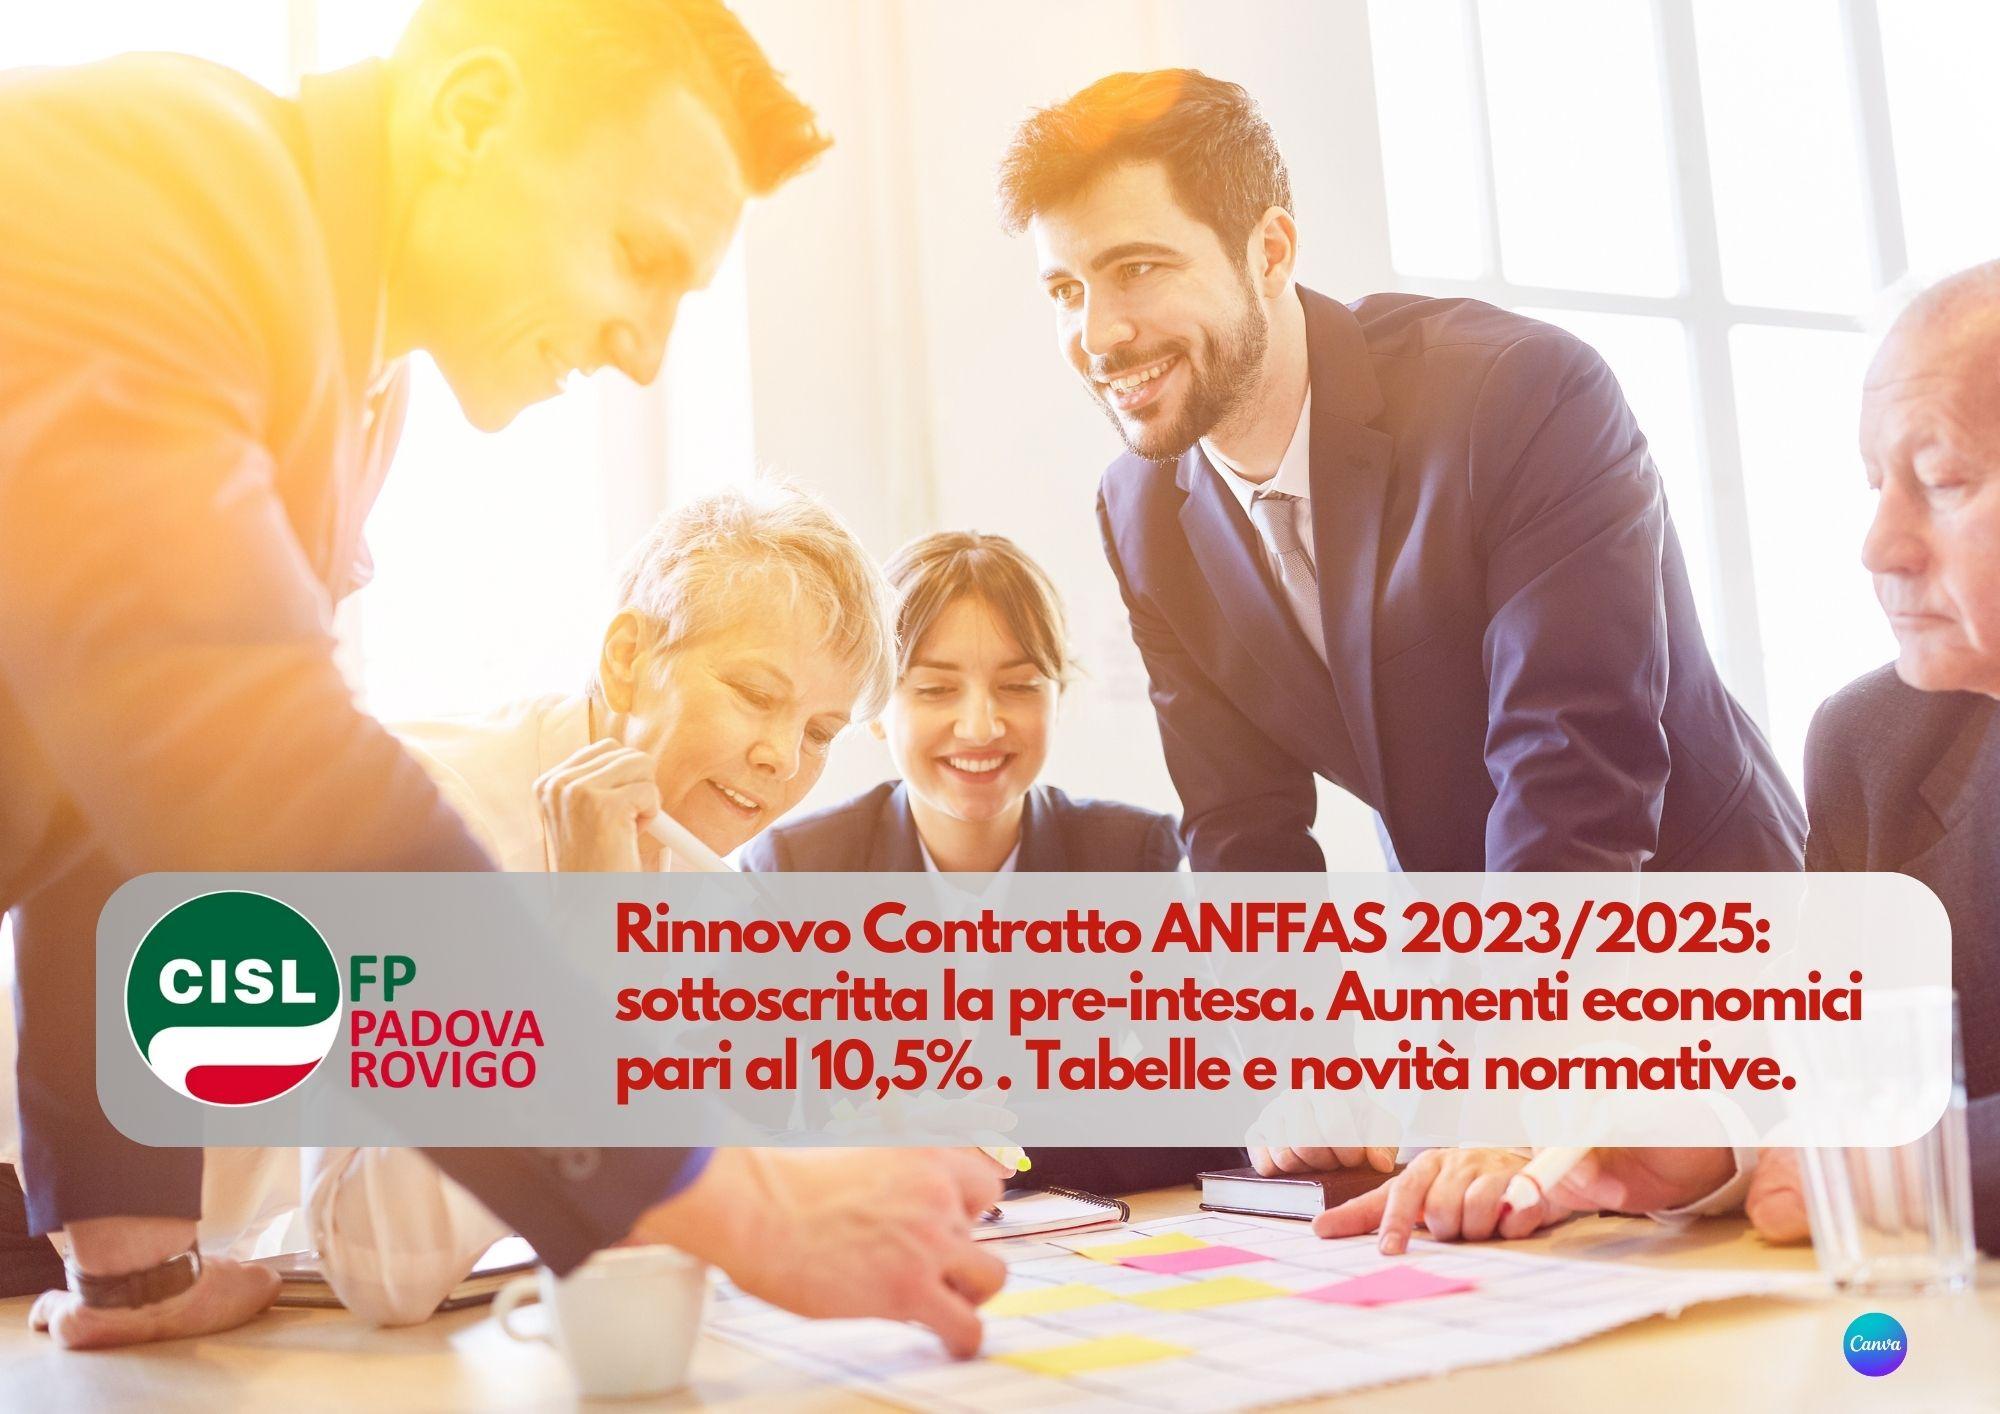 CISL FP Padova Rovigo. Rinnovo Contratto ANFFAS 2023/2025: sottoscritta la pre-intesa. I dettagli